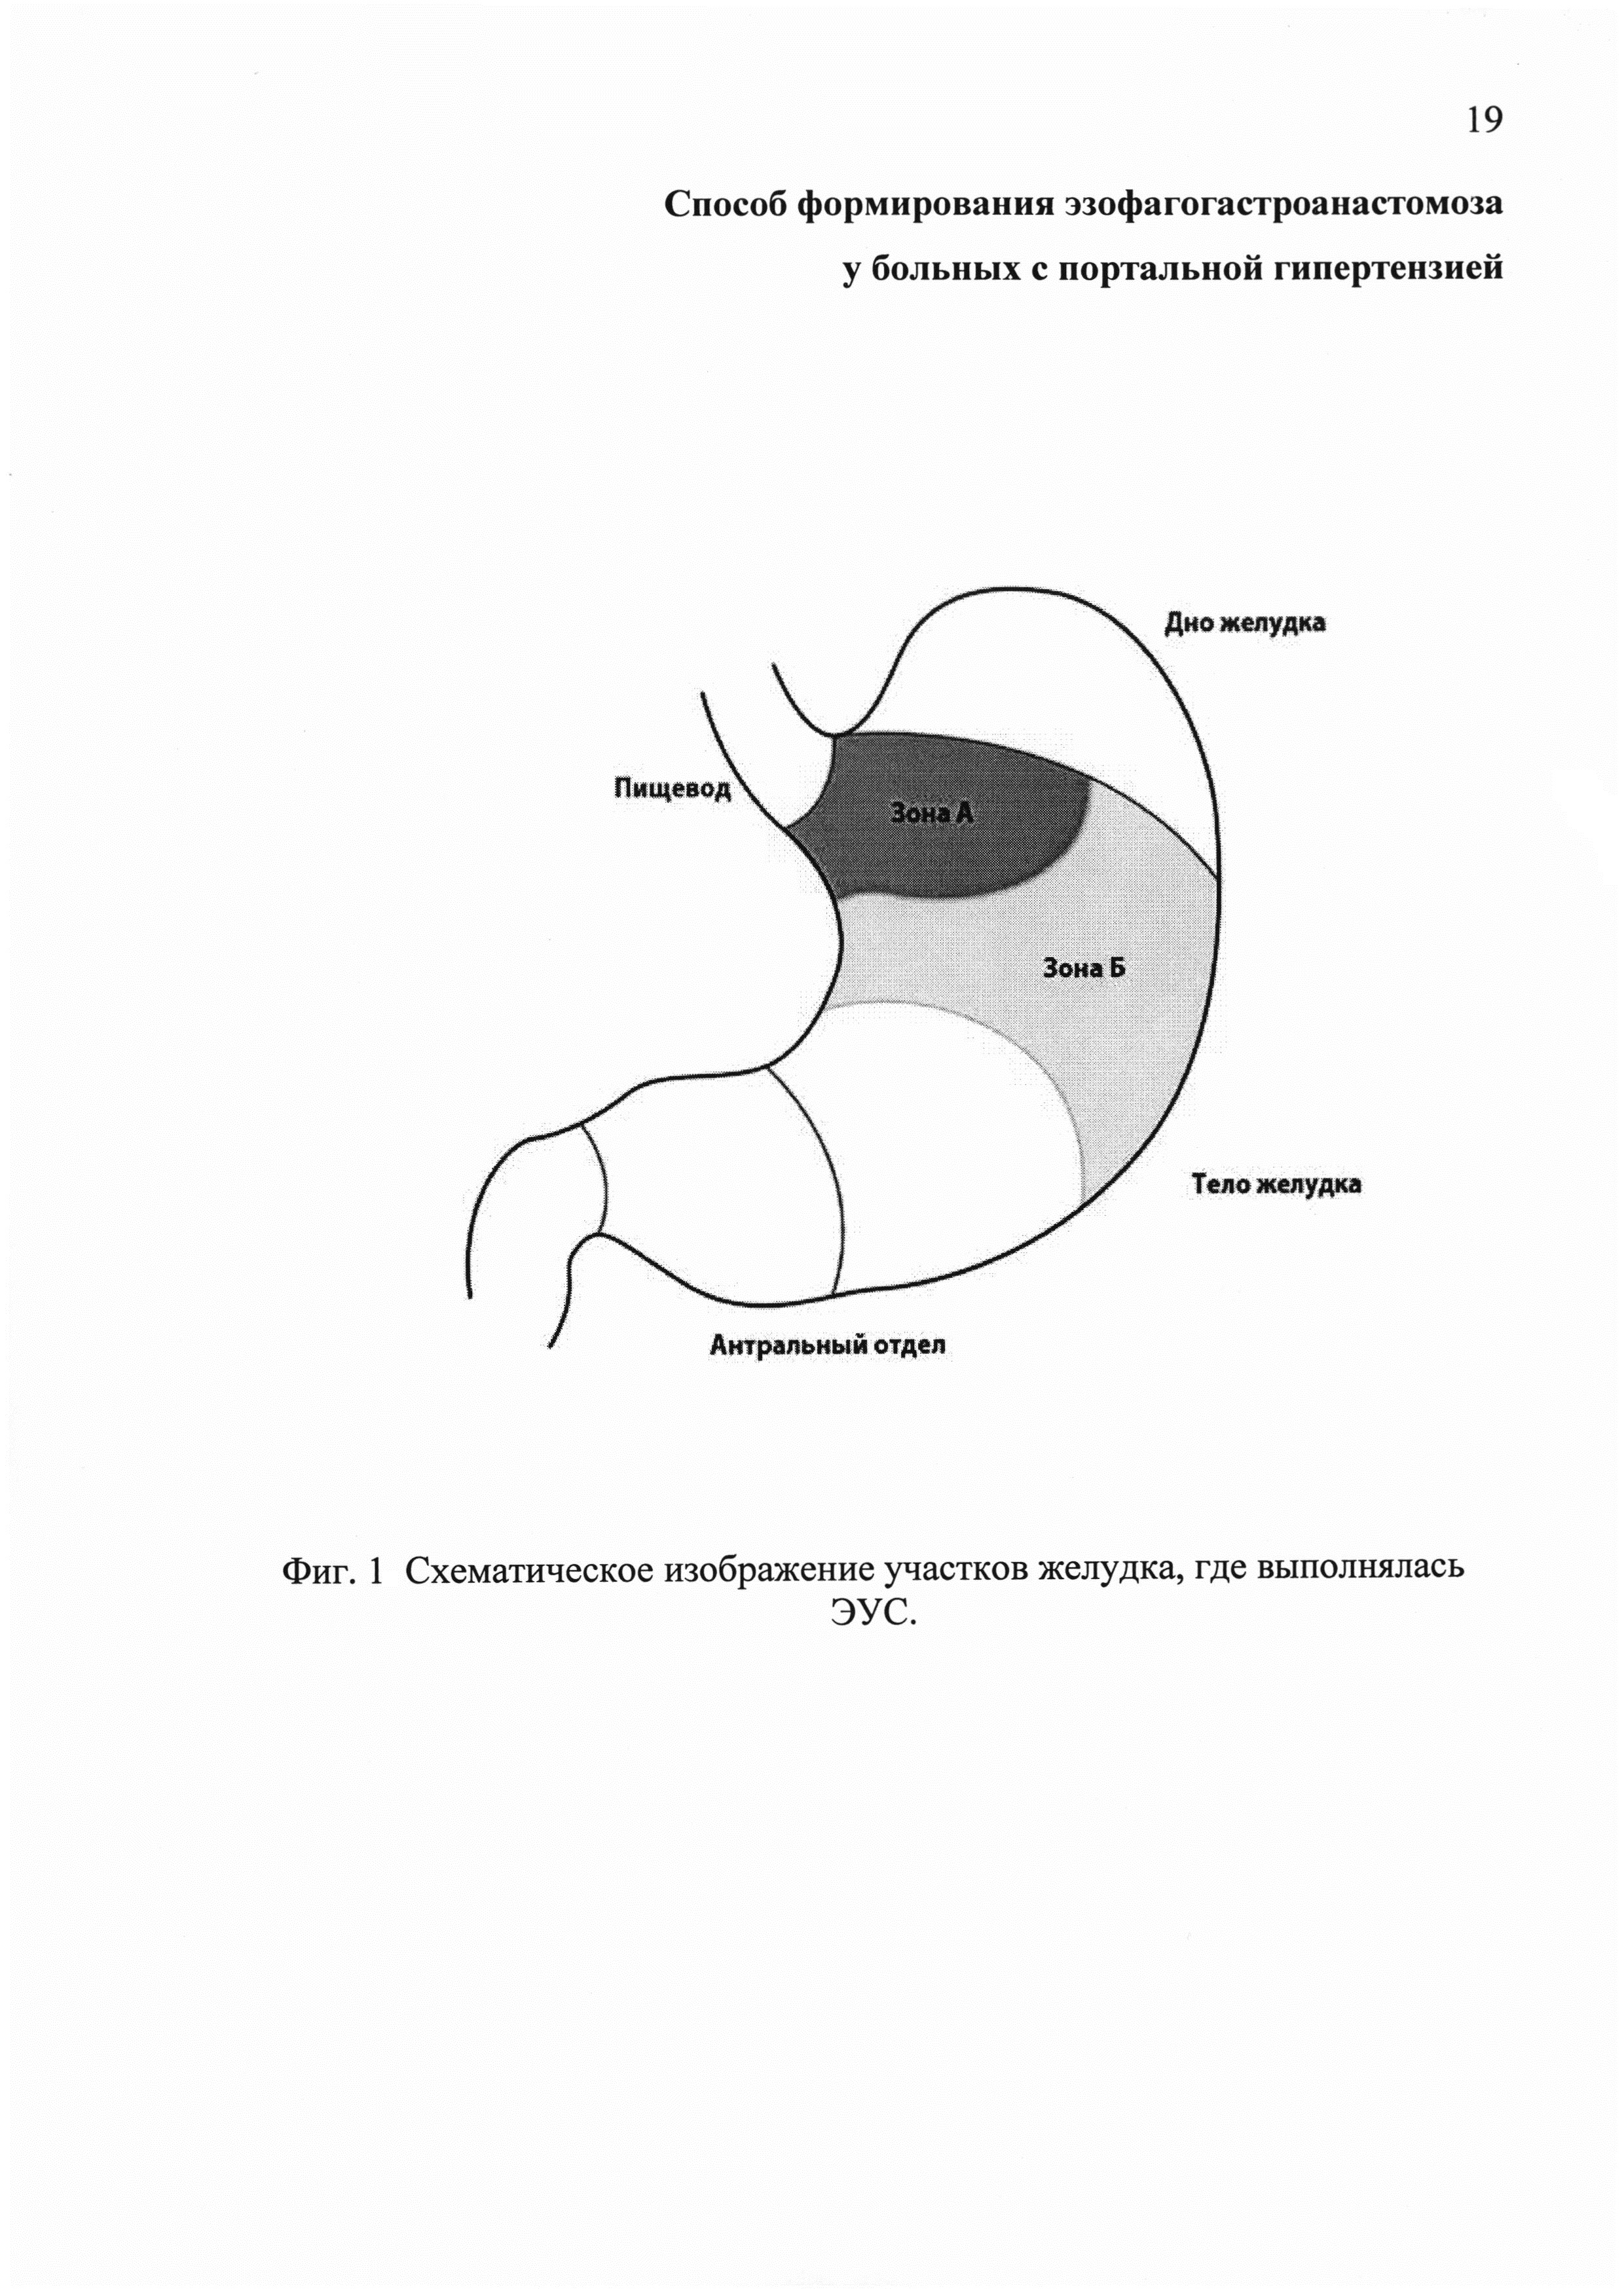 Способ формирования эзофагогастроанастомоза у больных с портальной гипертензией